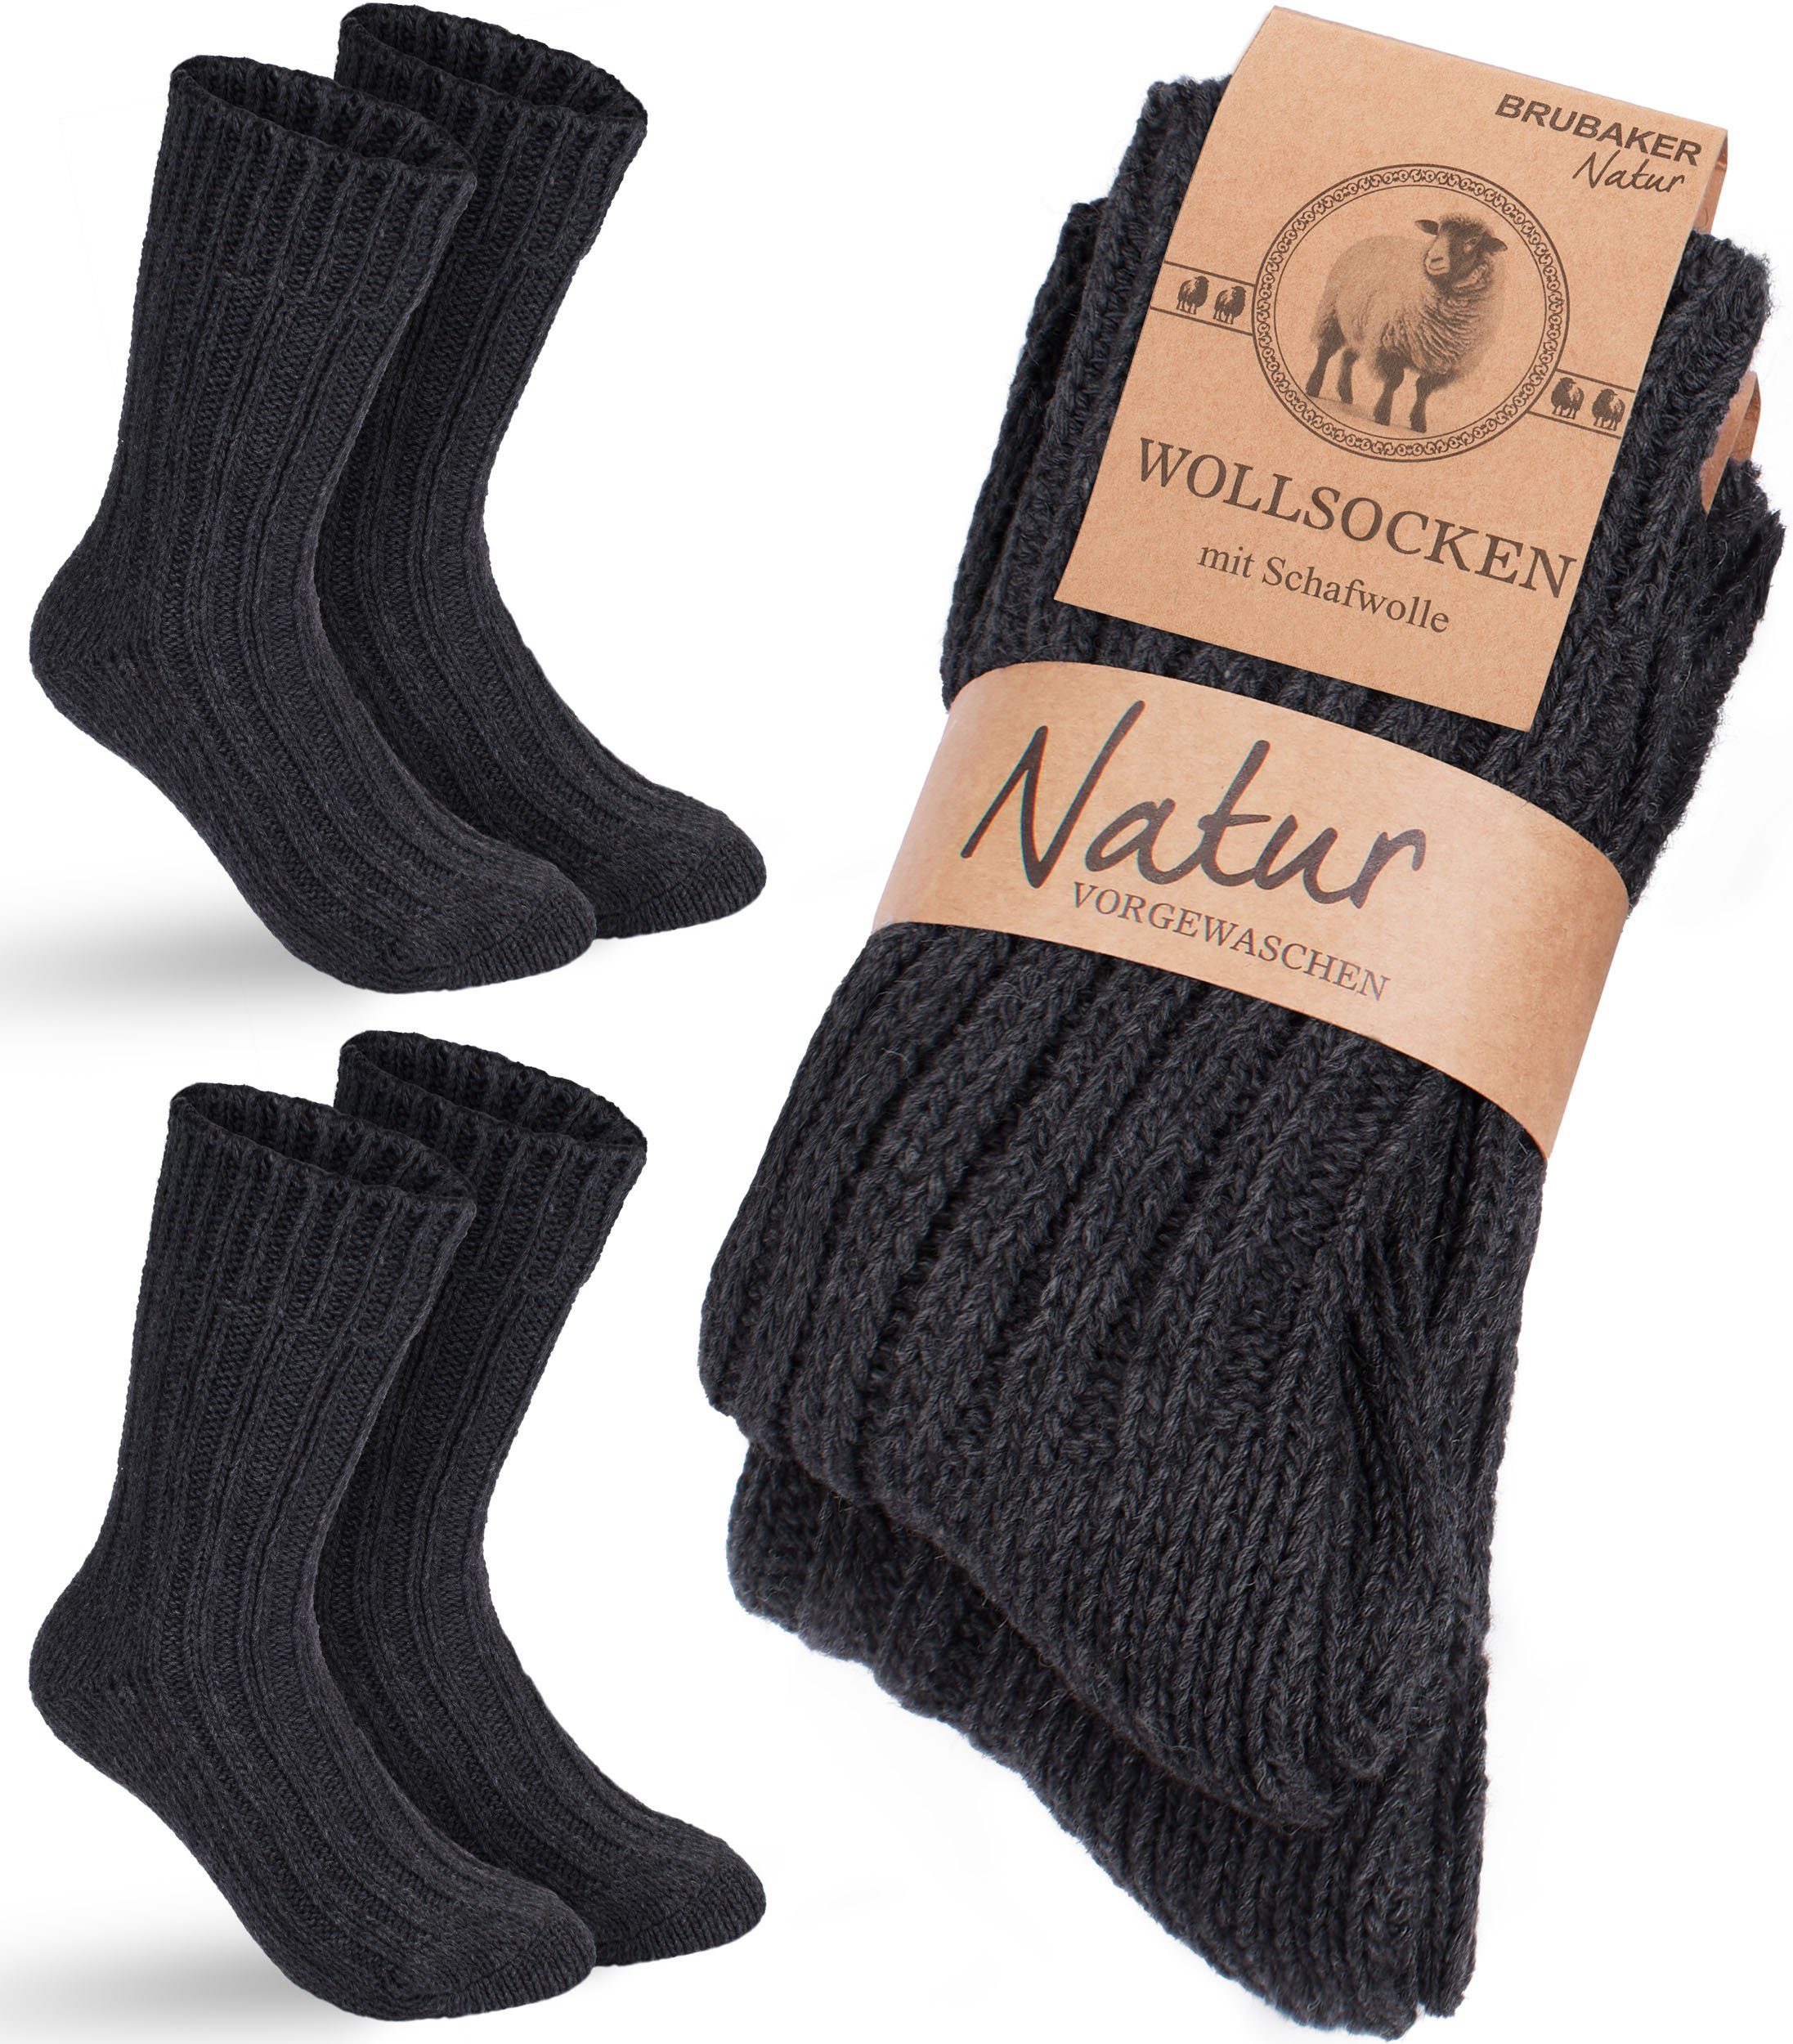 BRUBAKER Socken Wollsocken - Wintersocken für Damen und Herren - Warm und Flauschig (2-Paar) Stricksocken Set mit Schafwolle - Winter Thermosocken Anthrazit | Wandersocken